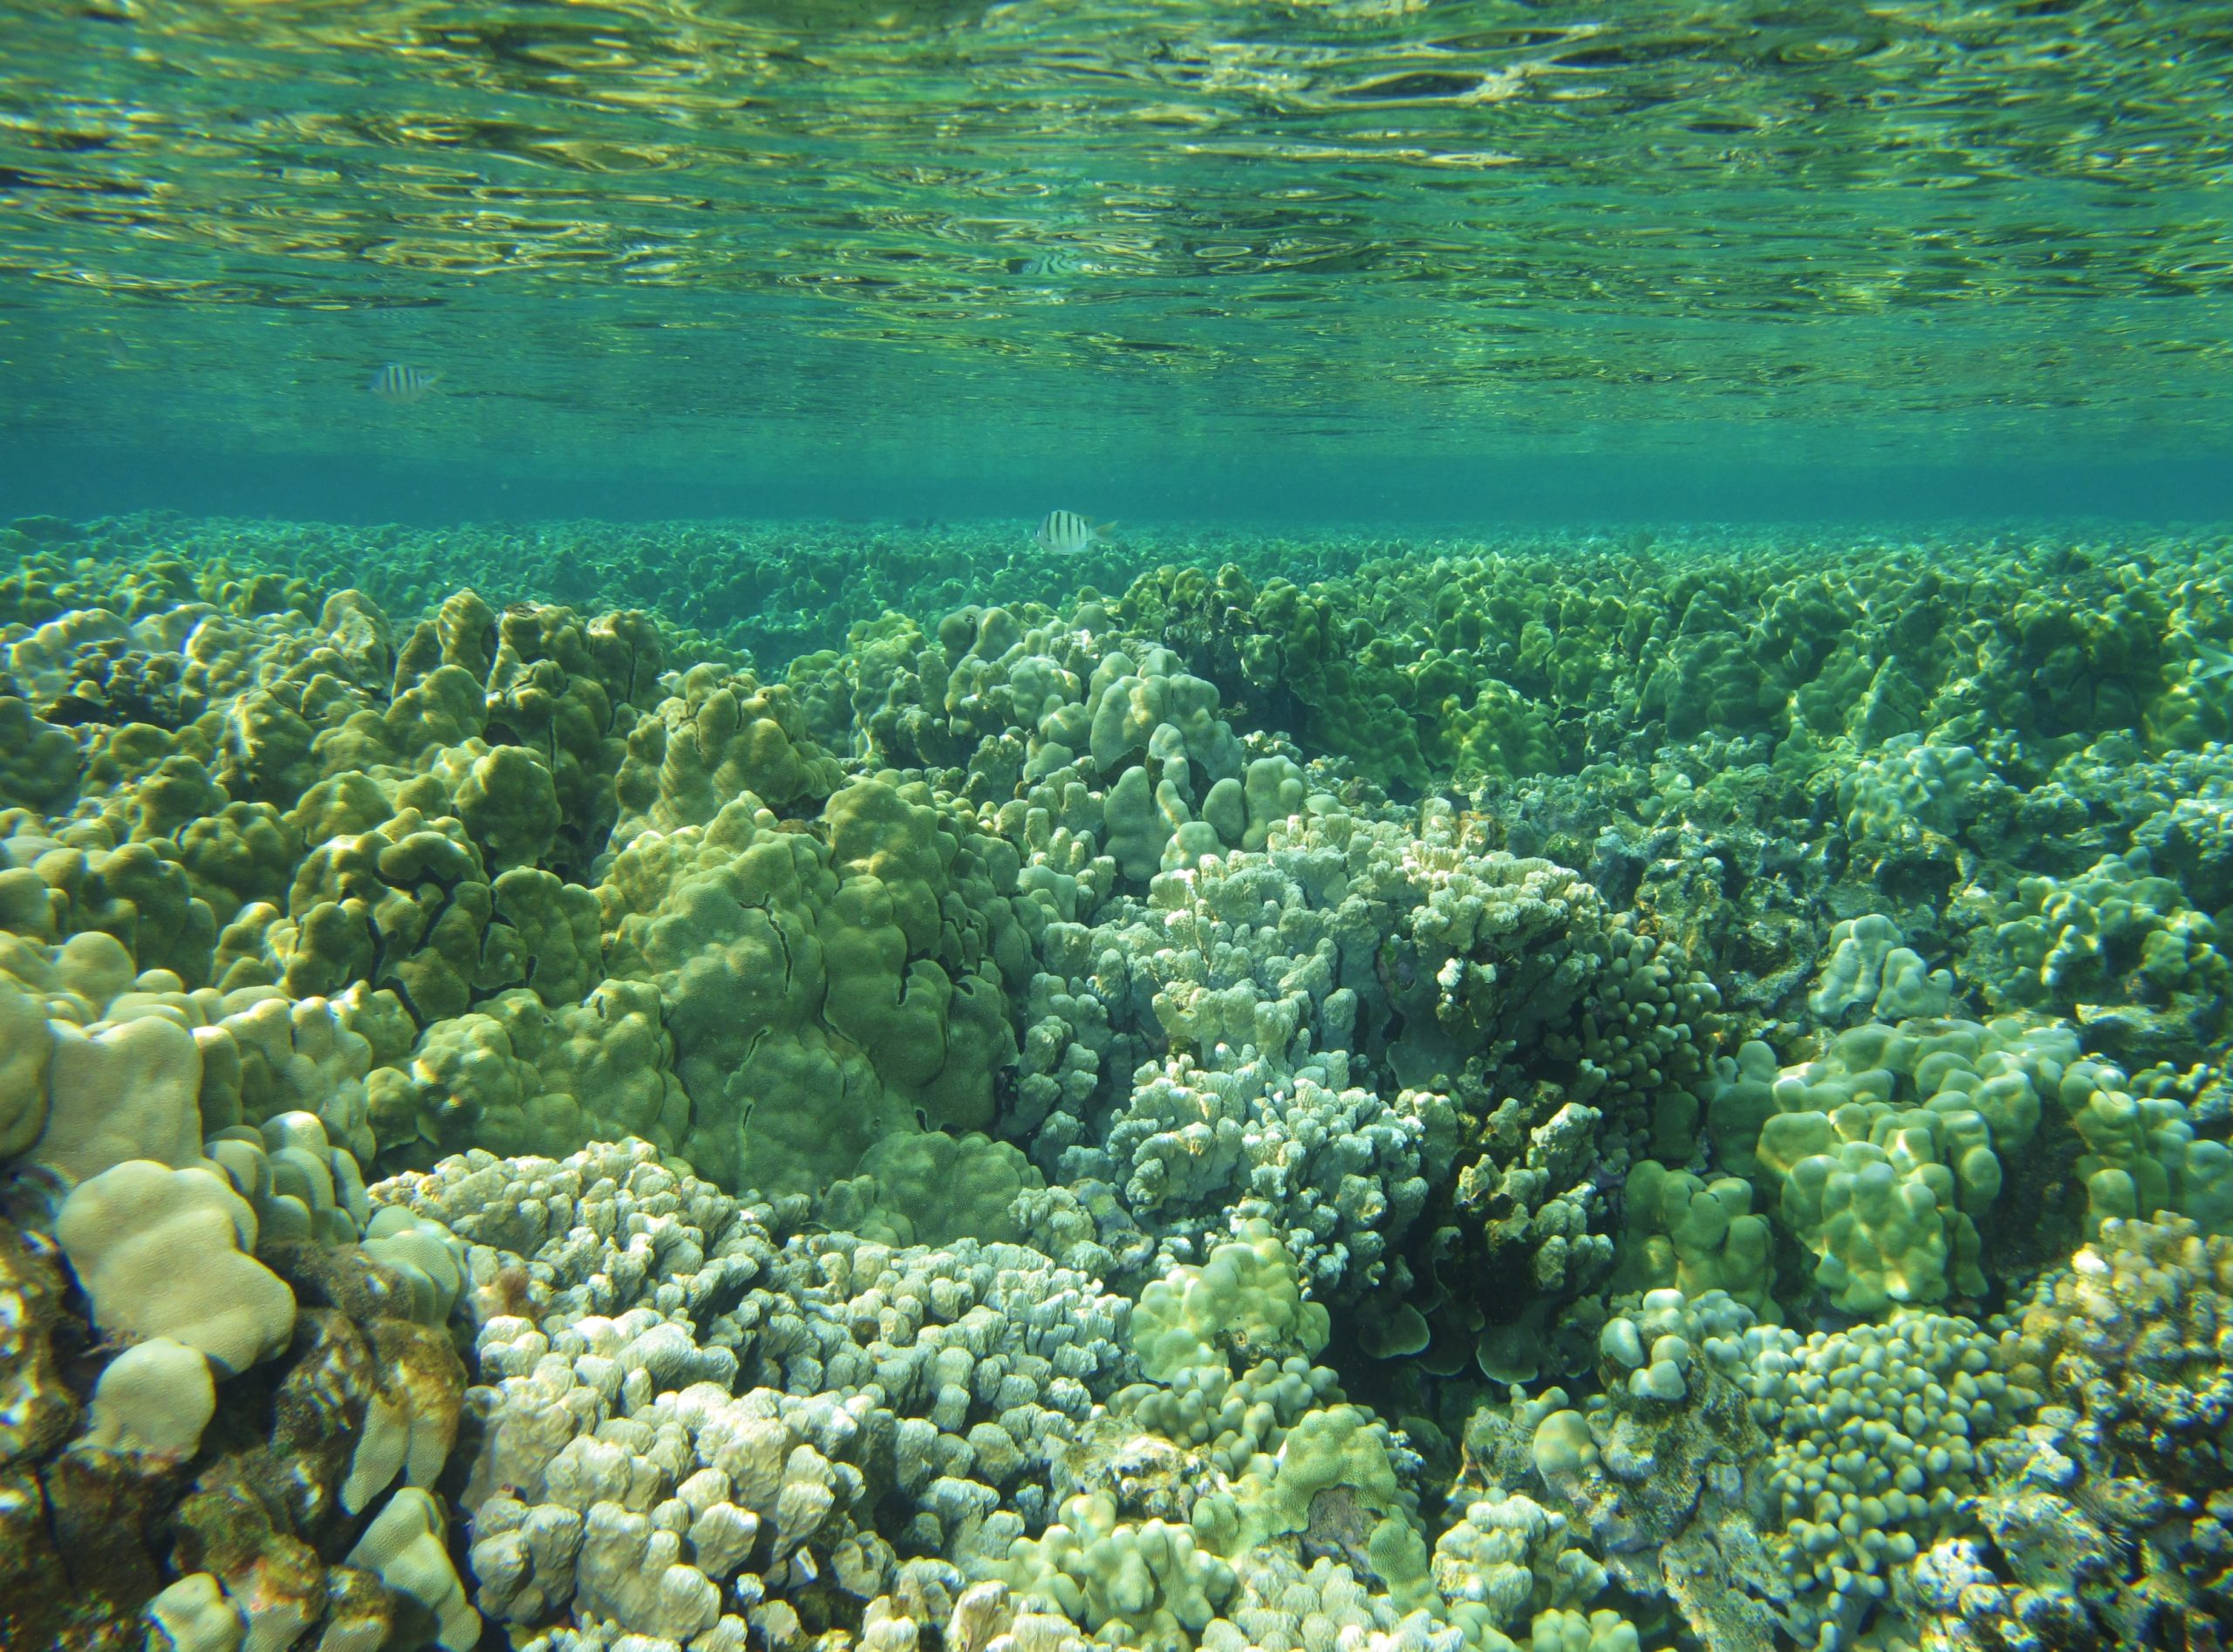 Healthy reef in Maui, Hawaii